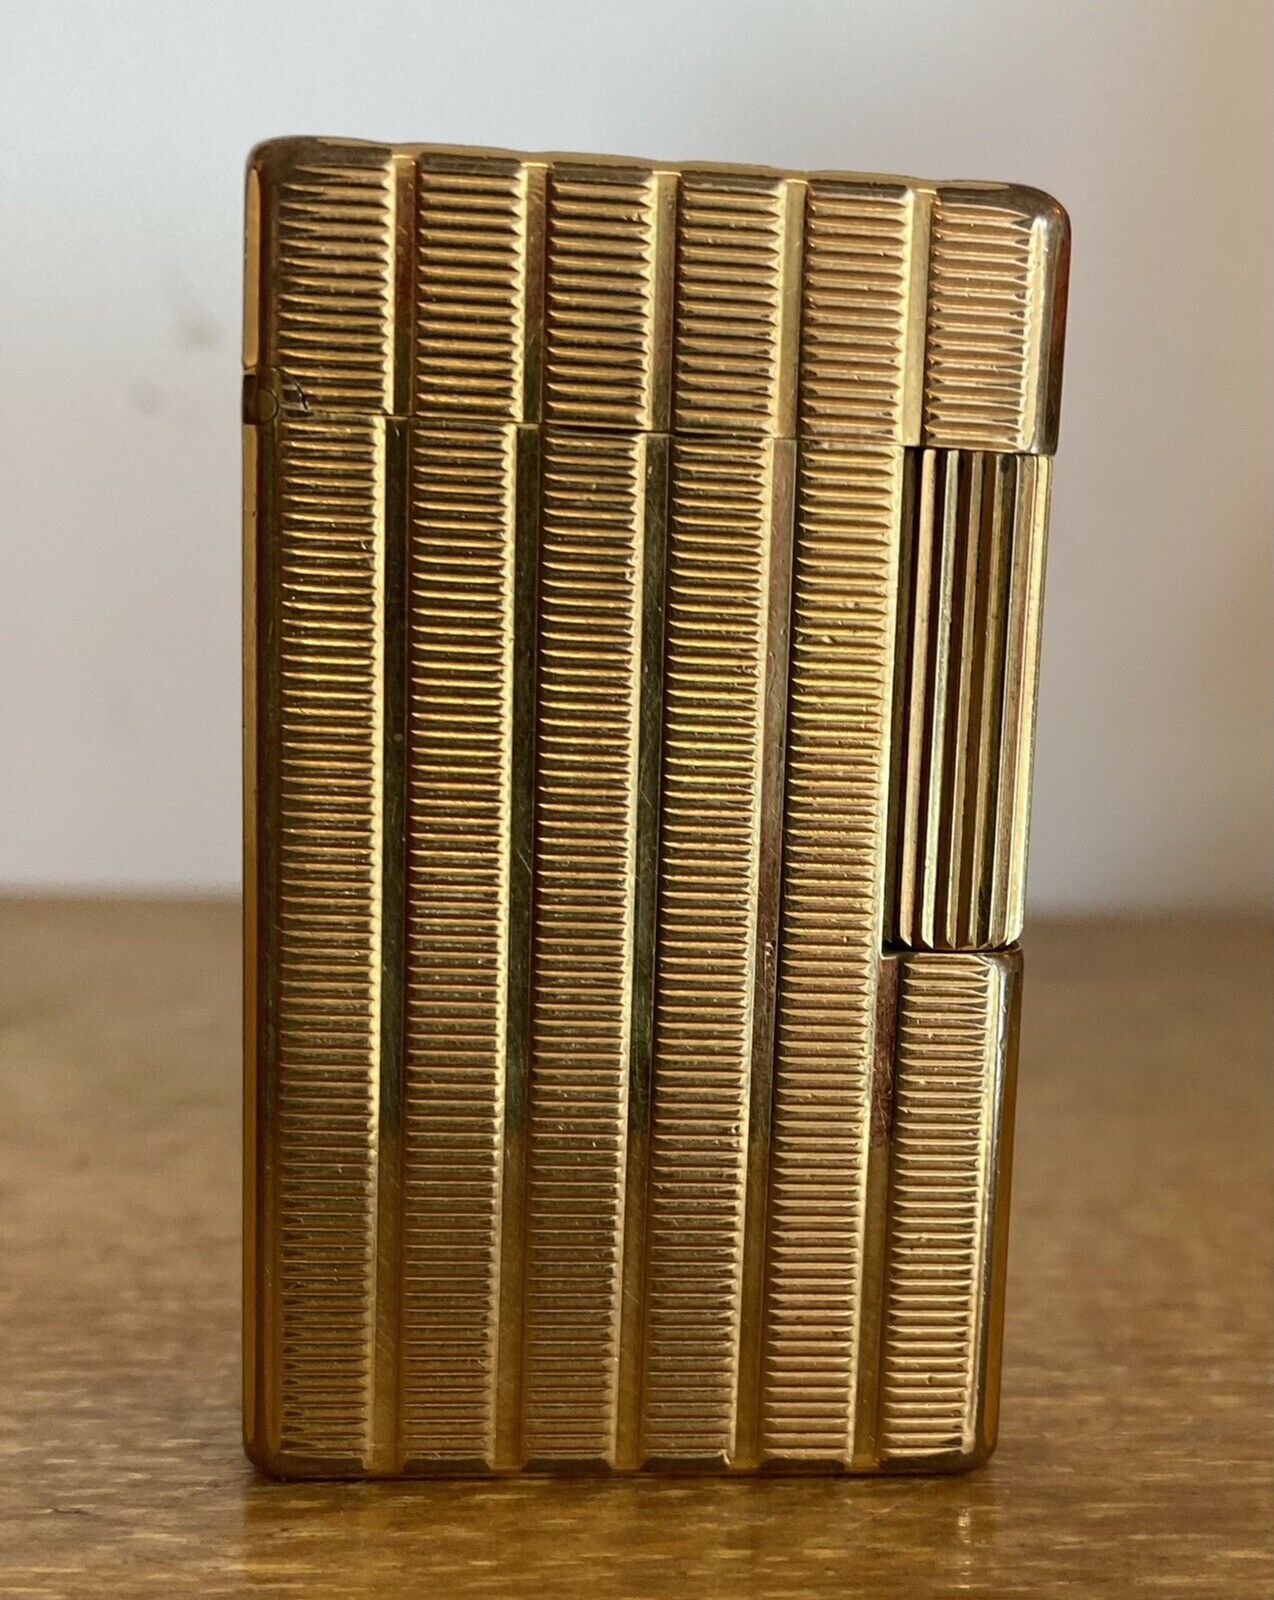 Featured image for “Ancien briquet à gaz S.T Dupont Paris plaqué or / 20 microns d'or”